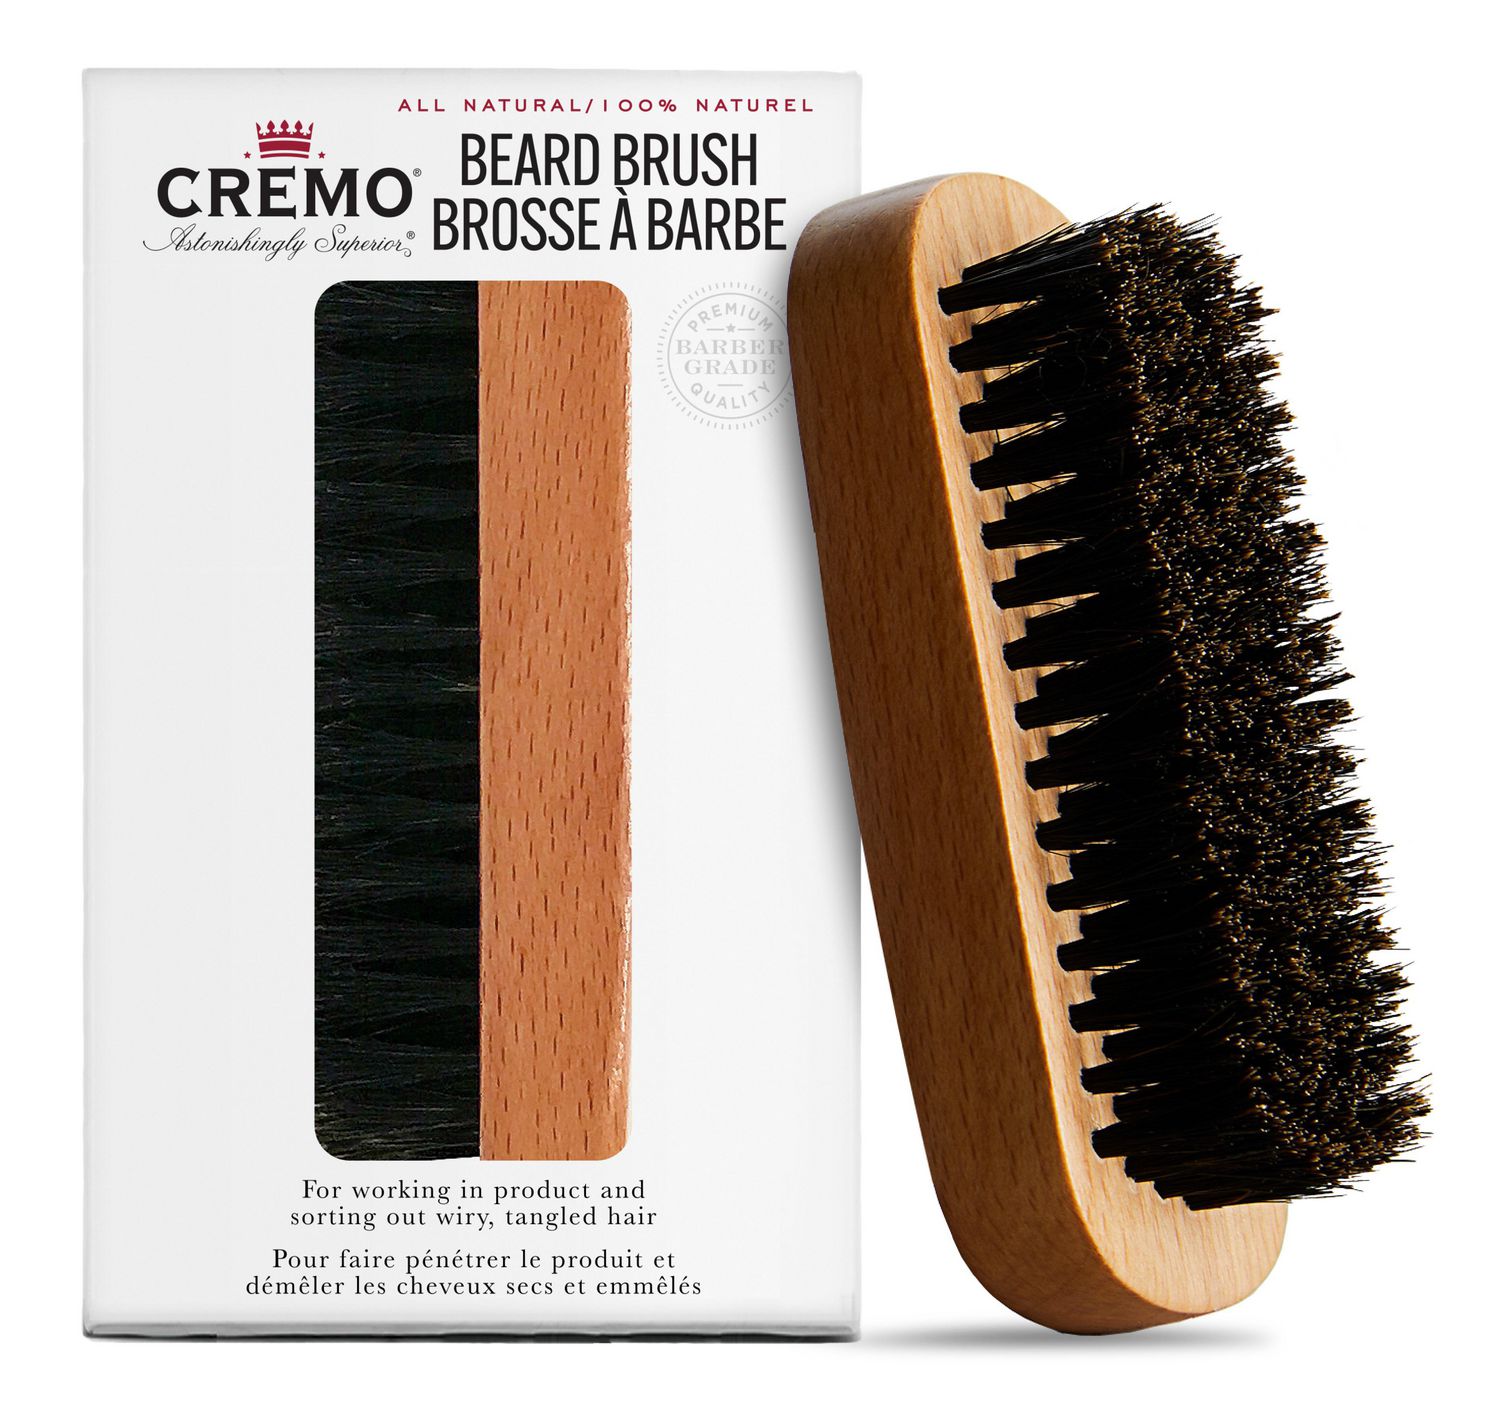 Faite de poils d'origine végétale à 100 %, cette brosse est parfaite pour  démêler, sculpter et styliser les barbes, quelle qu'en soit la longueur. 